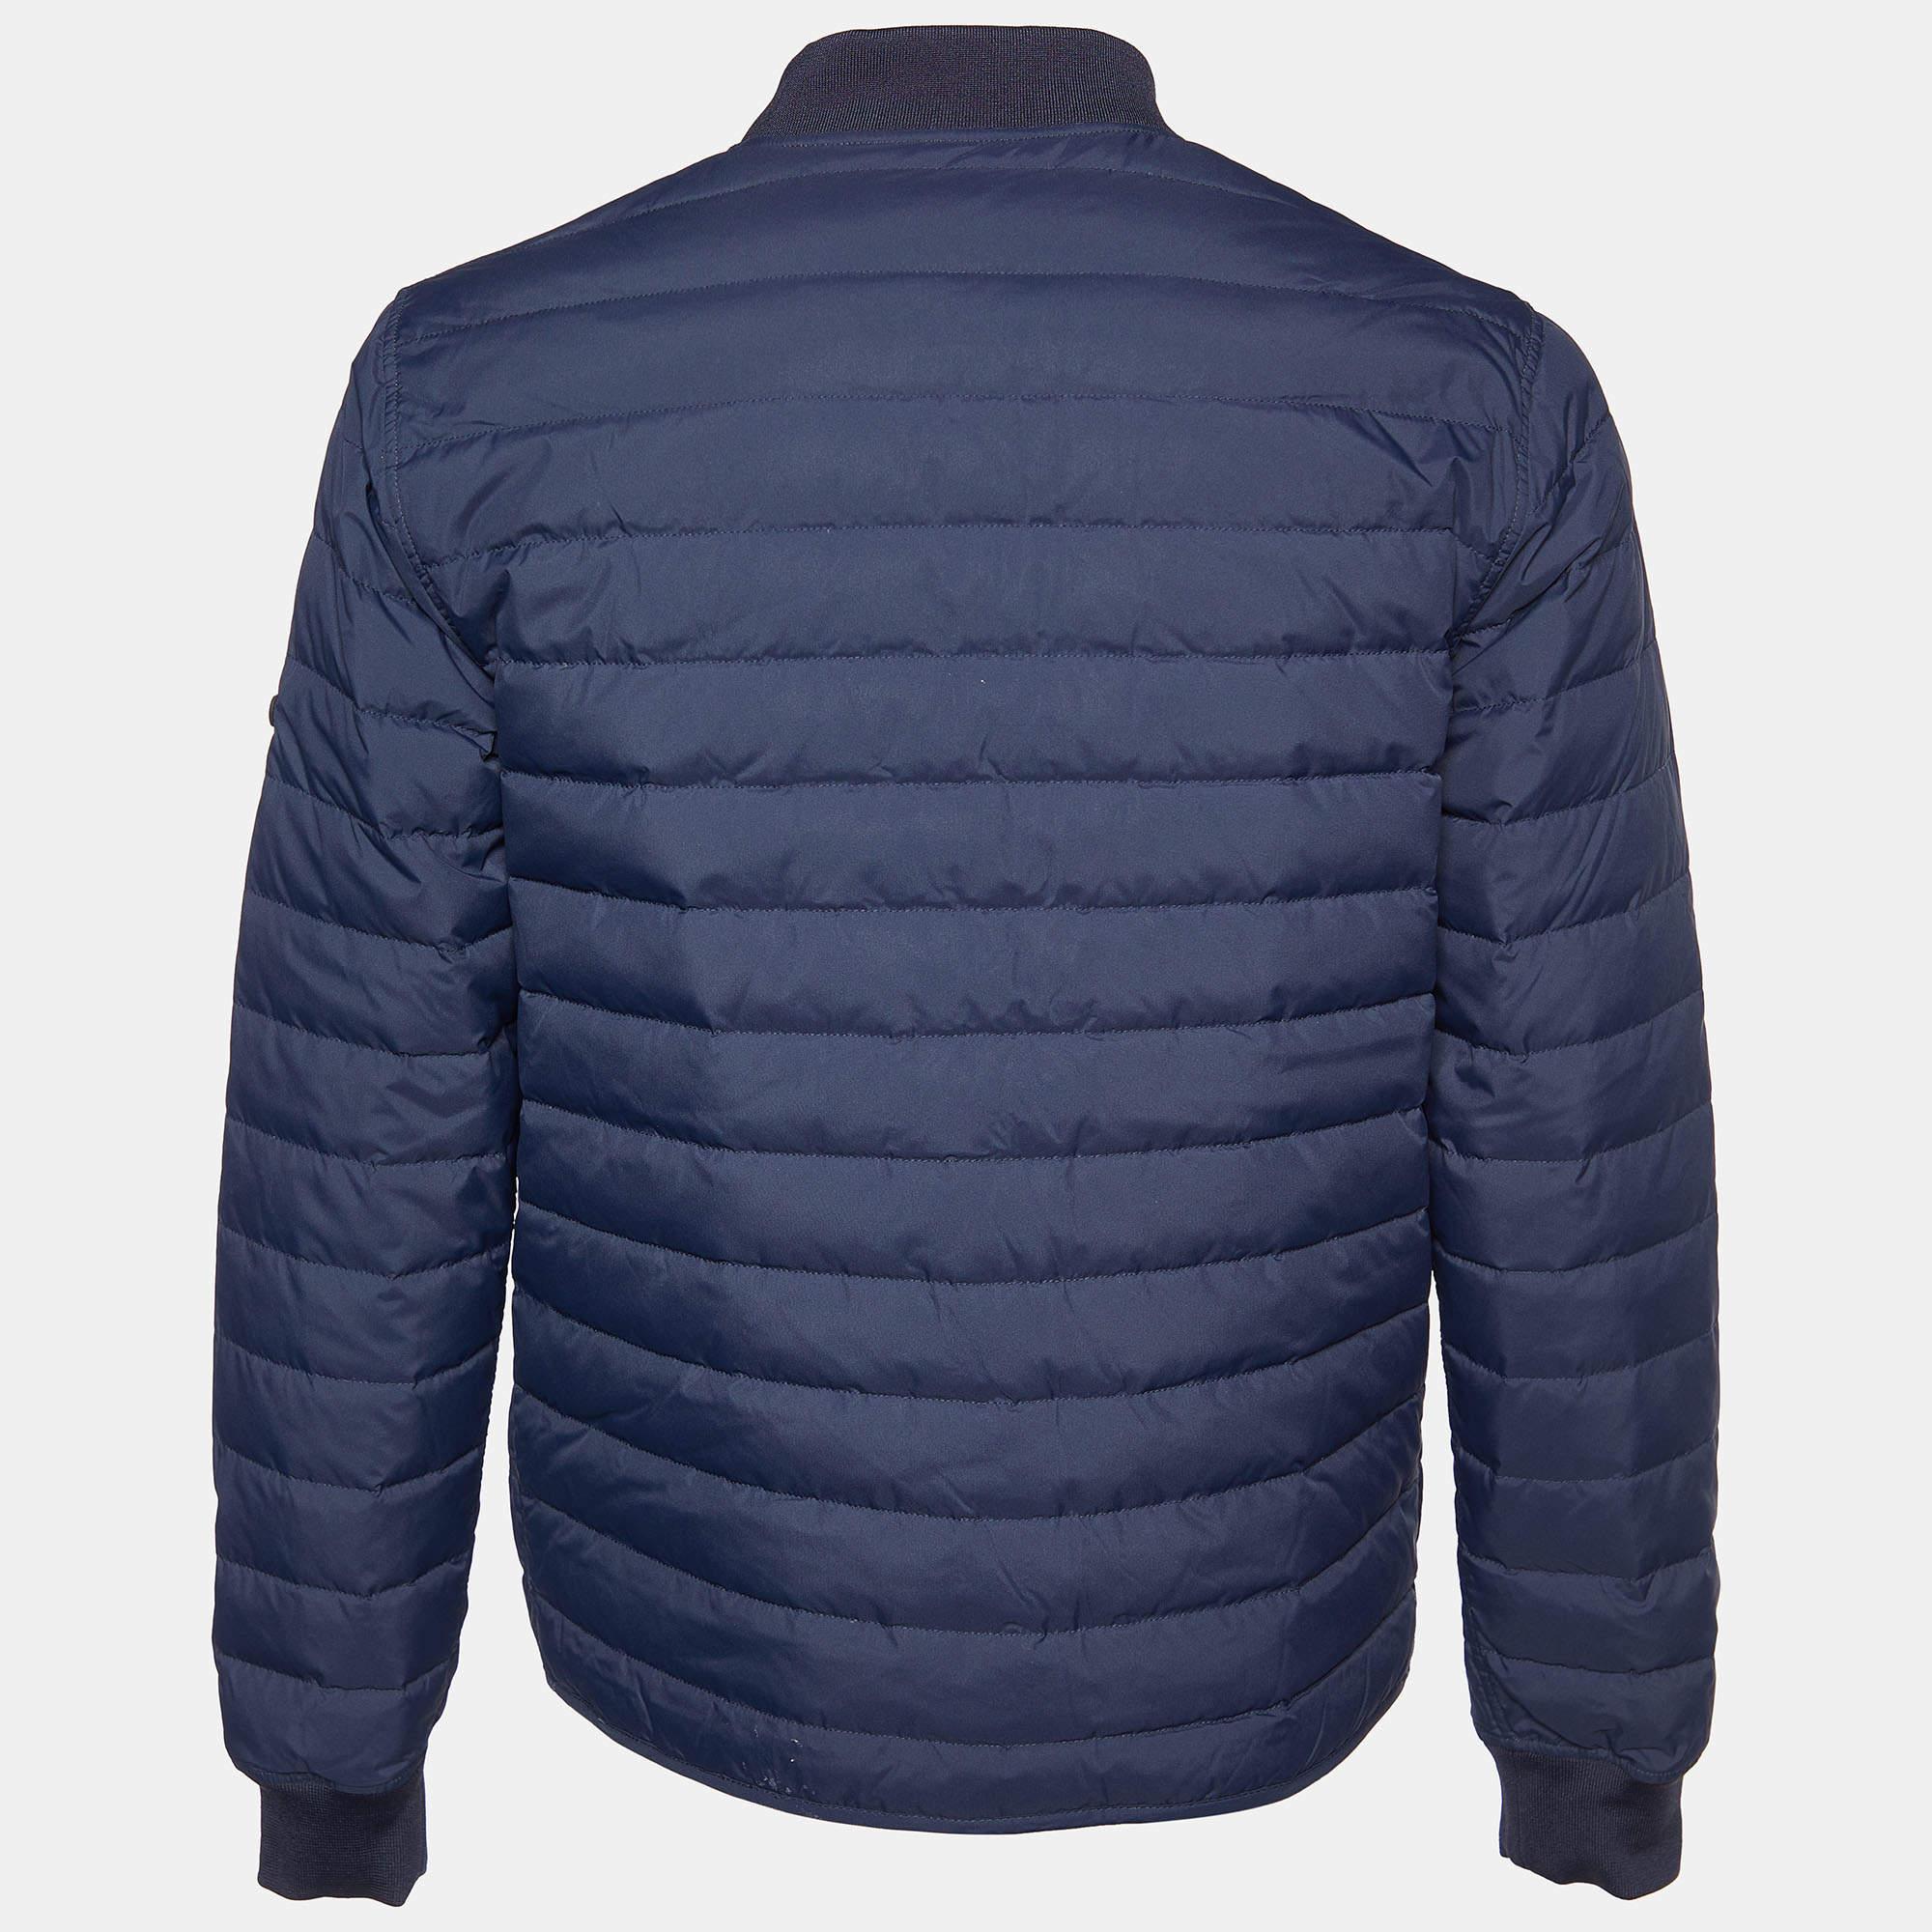 Die Jacke von Kenzo ist ein vielseitiges Modestück. Auf der einen Seite präsentiert sie sich in einem leuchtenden Blau mit einem einzigartigen Druck, während die Rückseite ein klassisches Steppmuster aufweist. Diese Jacke vereint Stil und